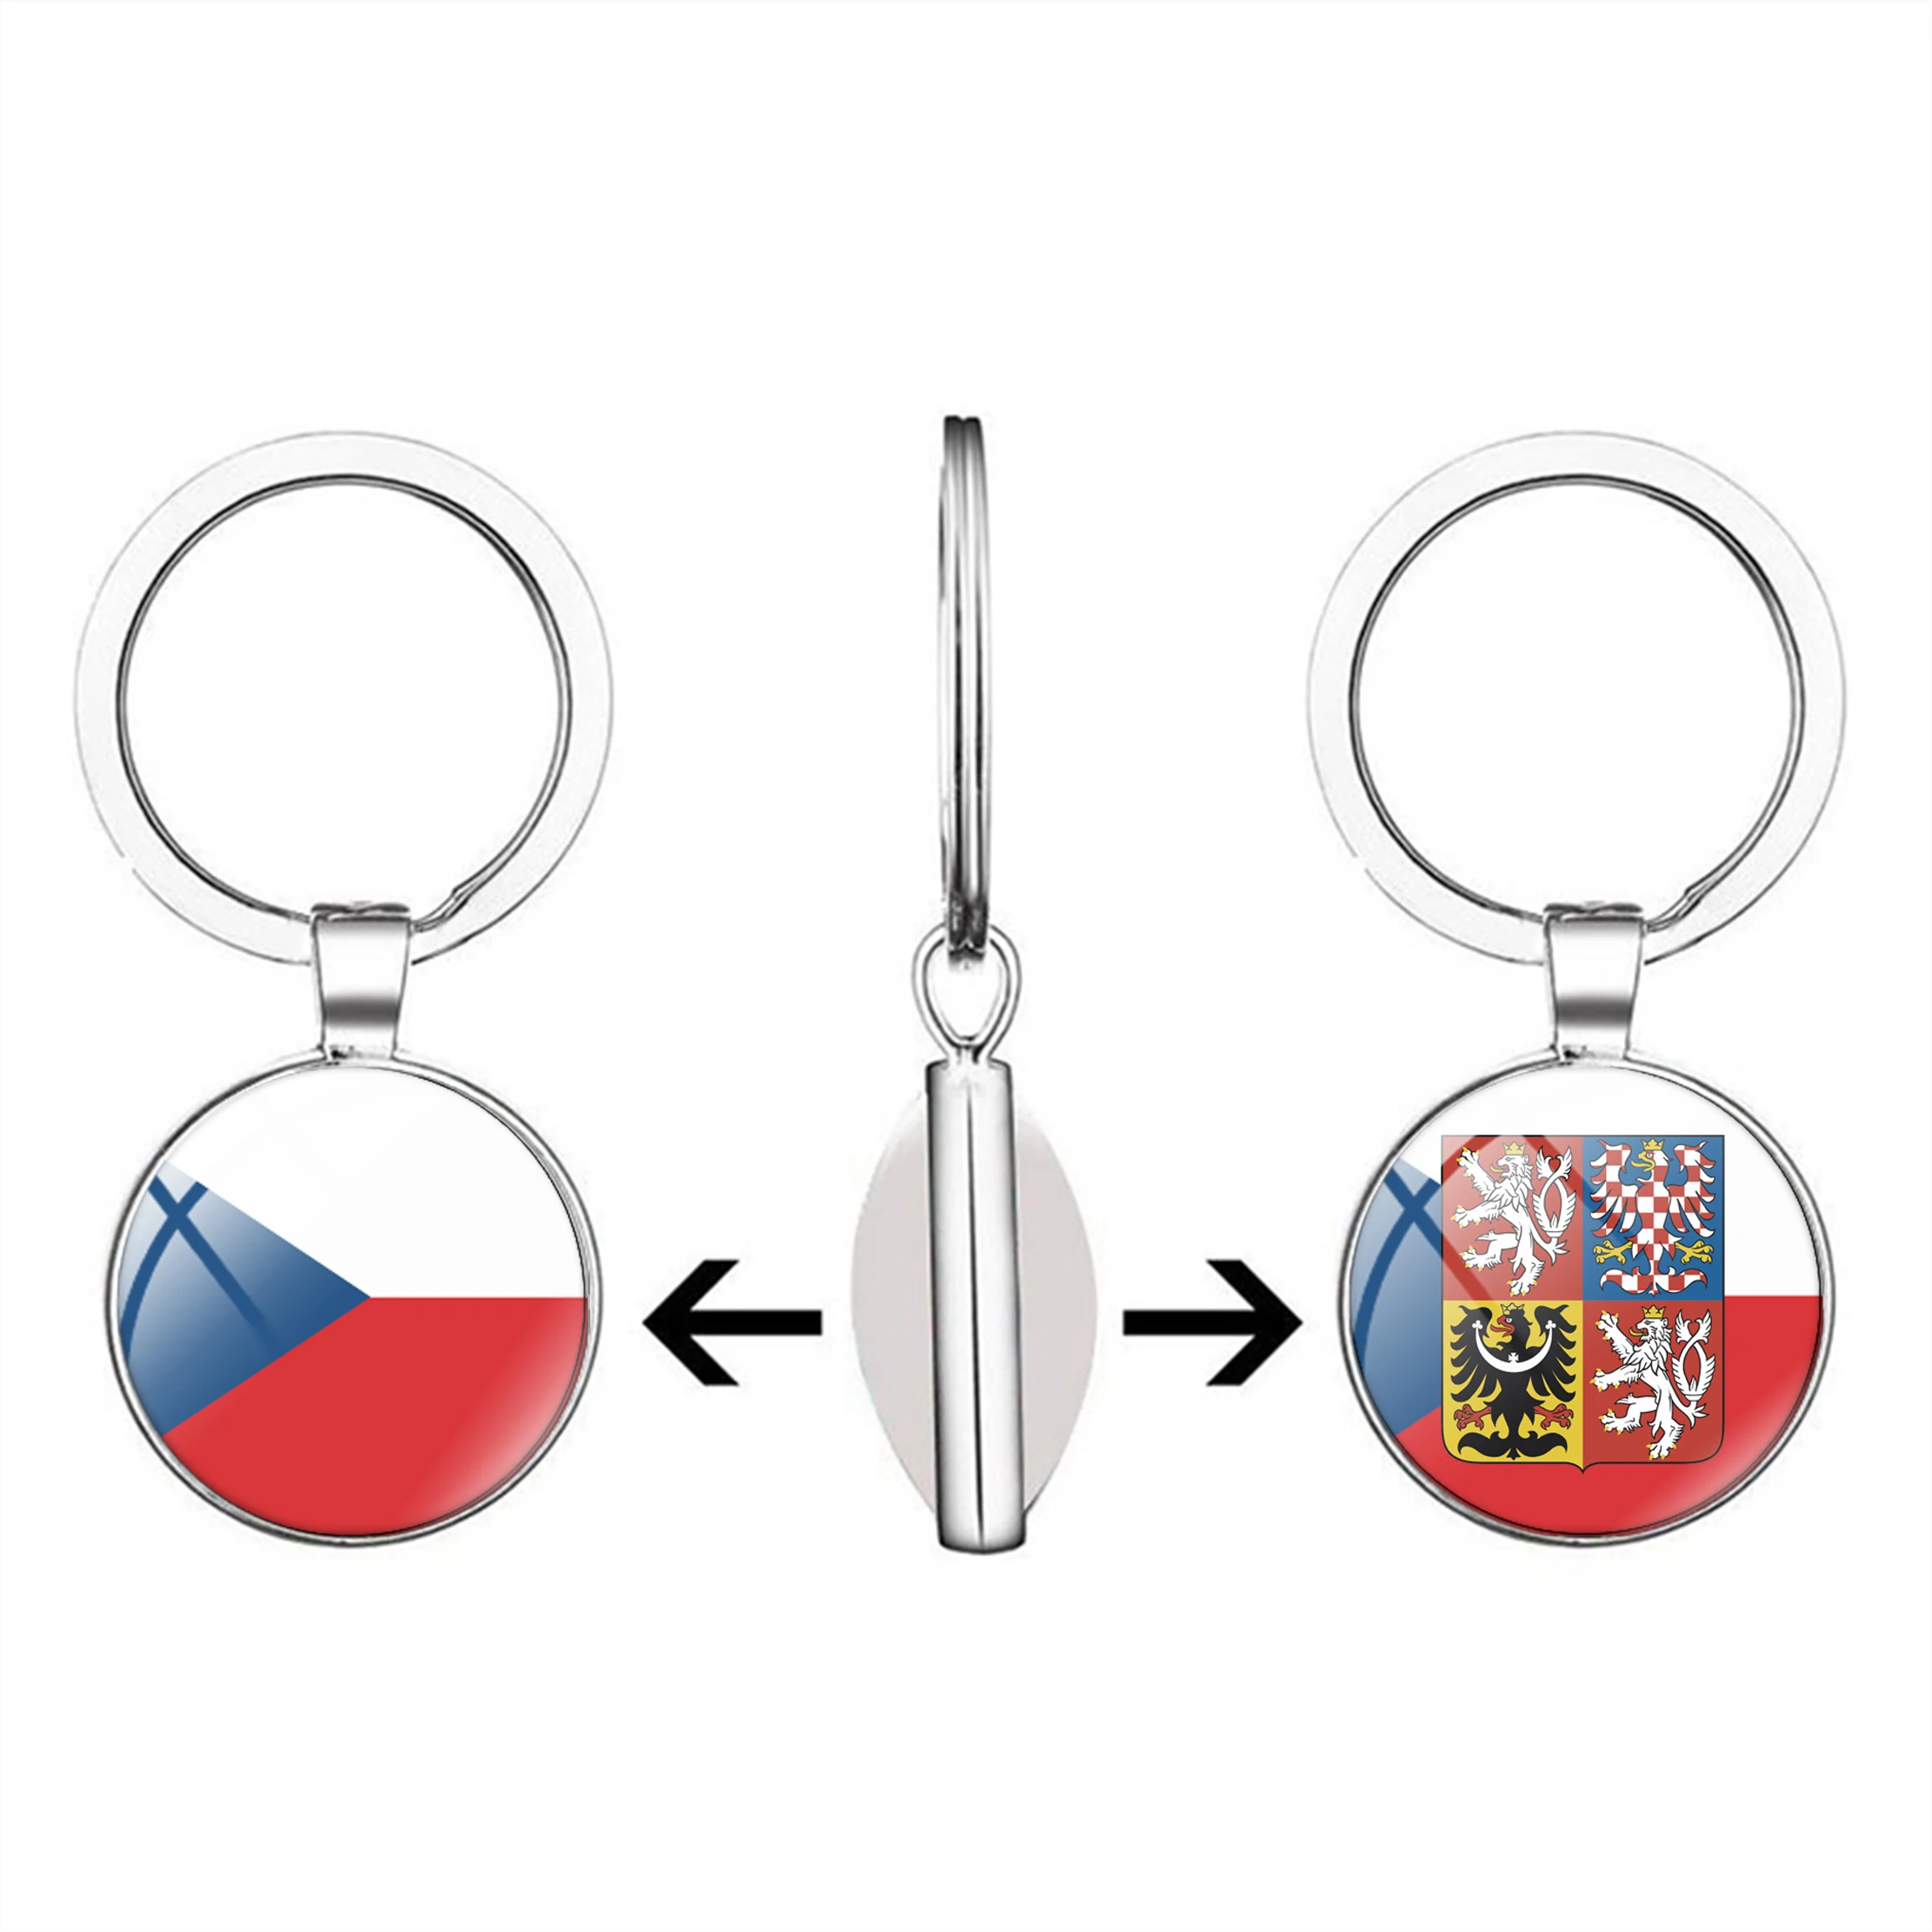 Двусторонний брелок-сувенир с замочной скважиной в виде флага Чешской Республики